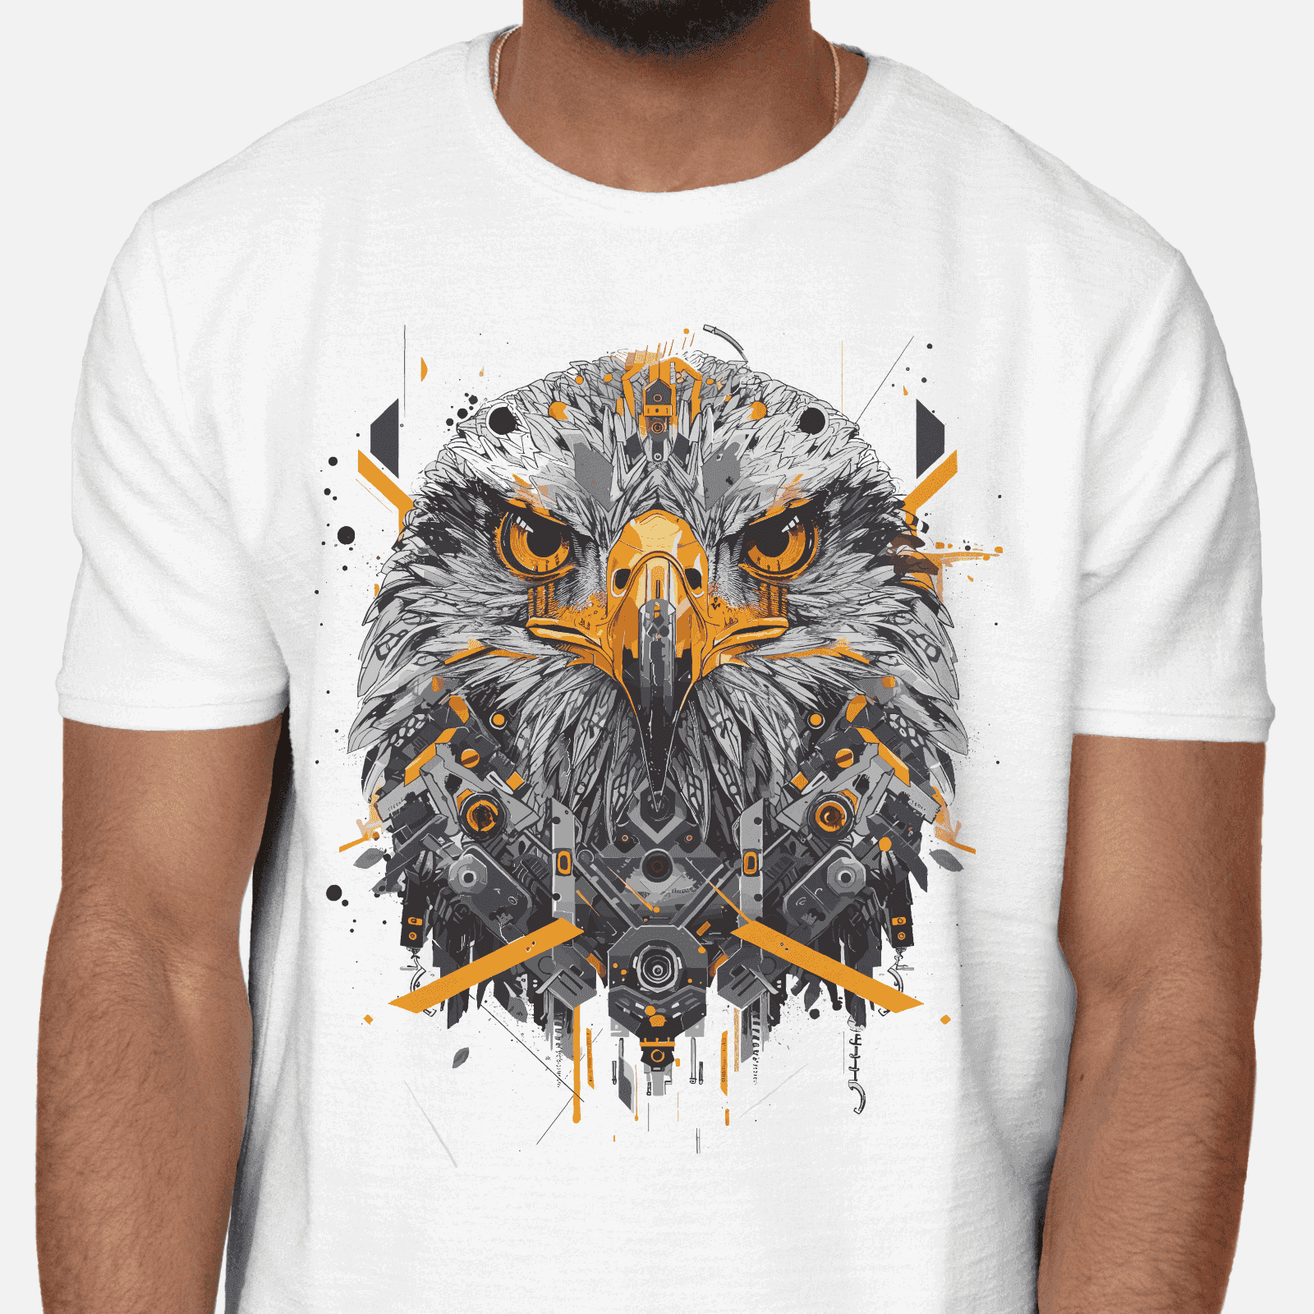 Premium Design- Eagle Precision: Mechanical Eagle Face Graphic Men's T-Shirt